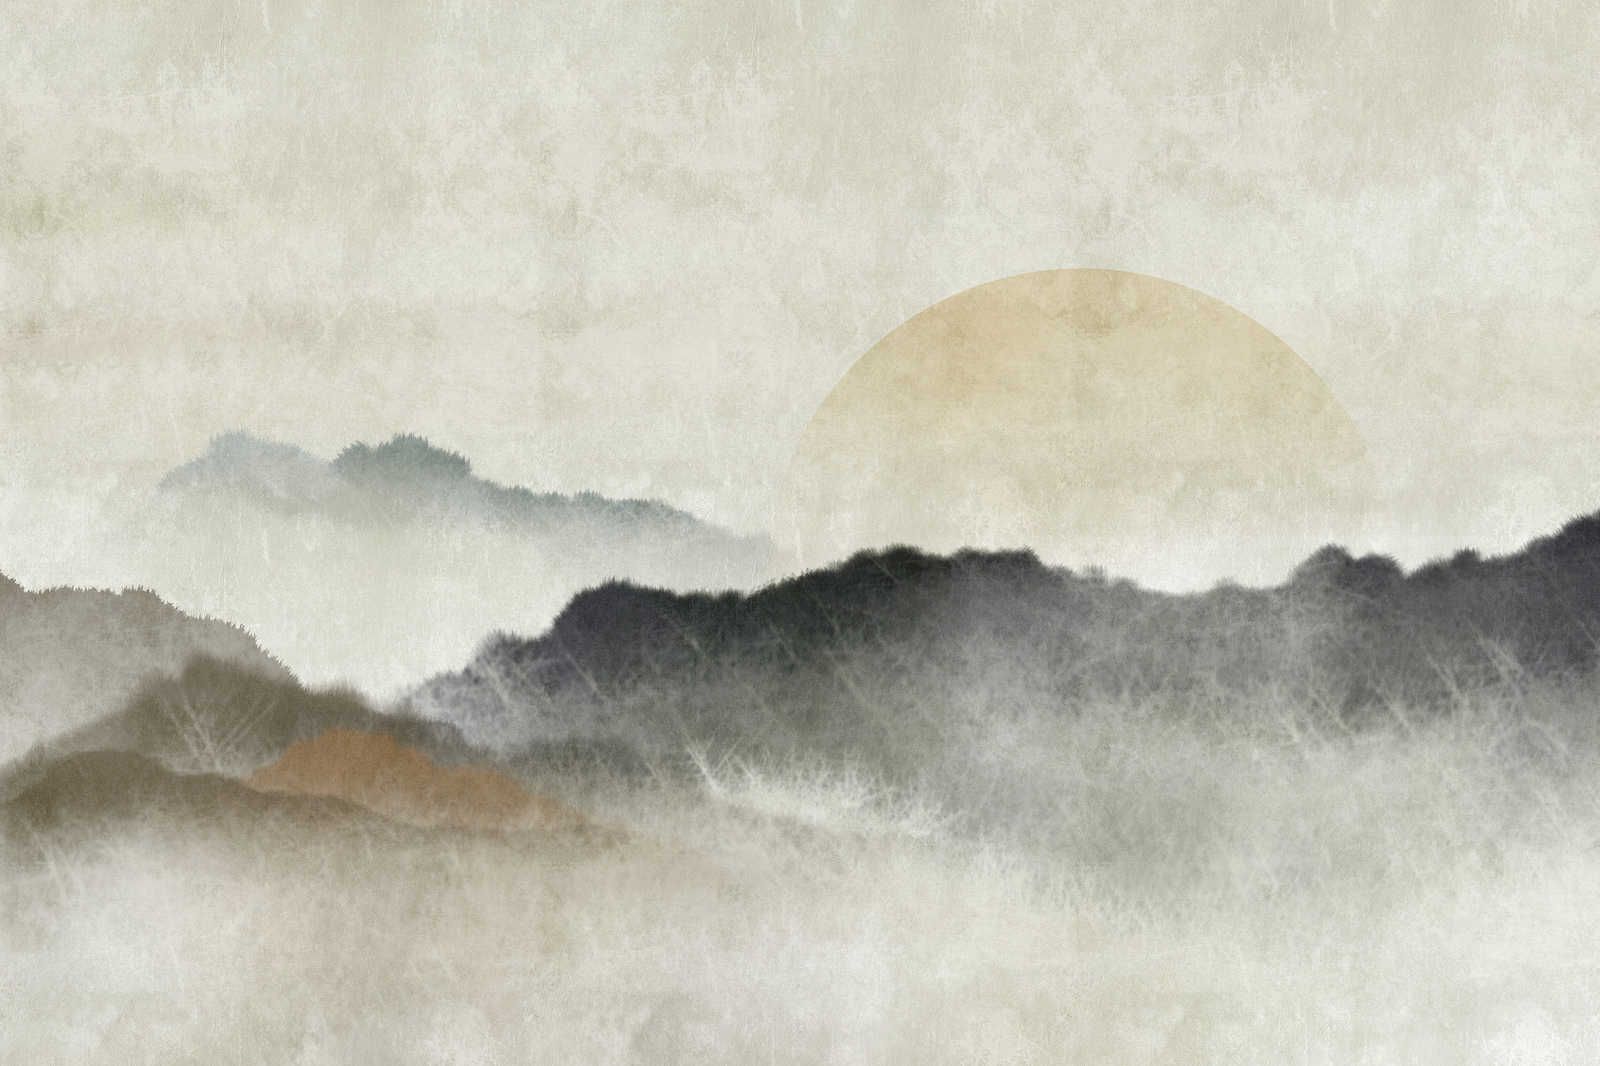             Akaishi 1 - Pintura en lienzo Impresión asiática Cordillera al amanecer - 0,90 m x 0,60 m
        